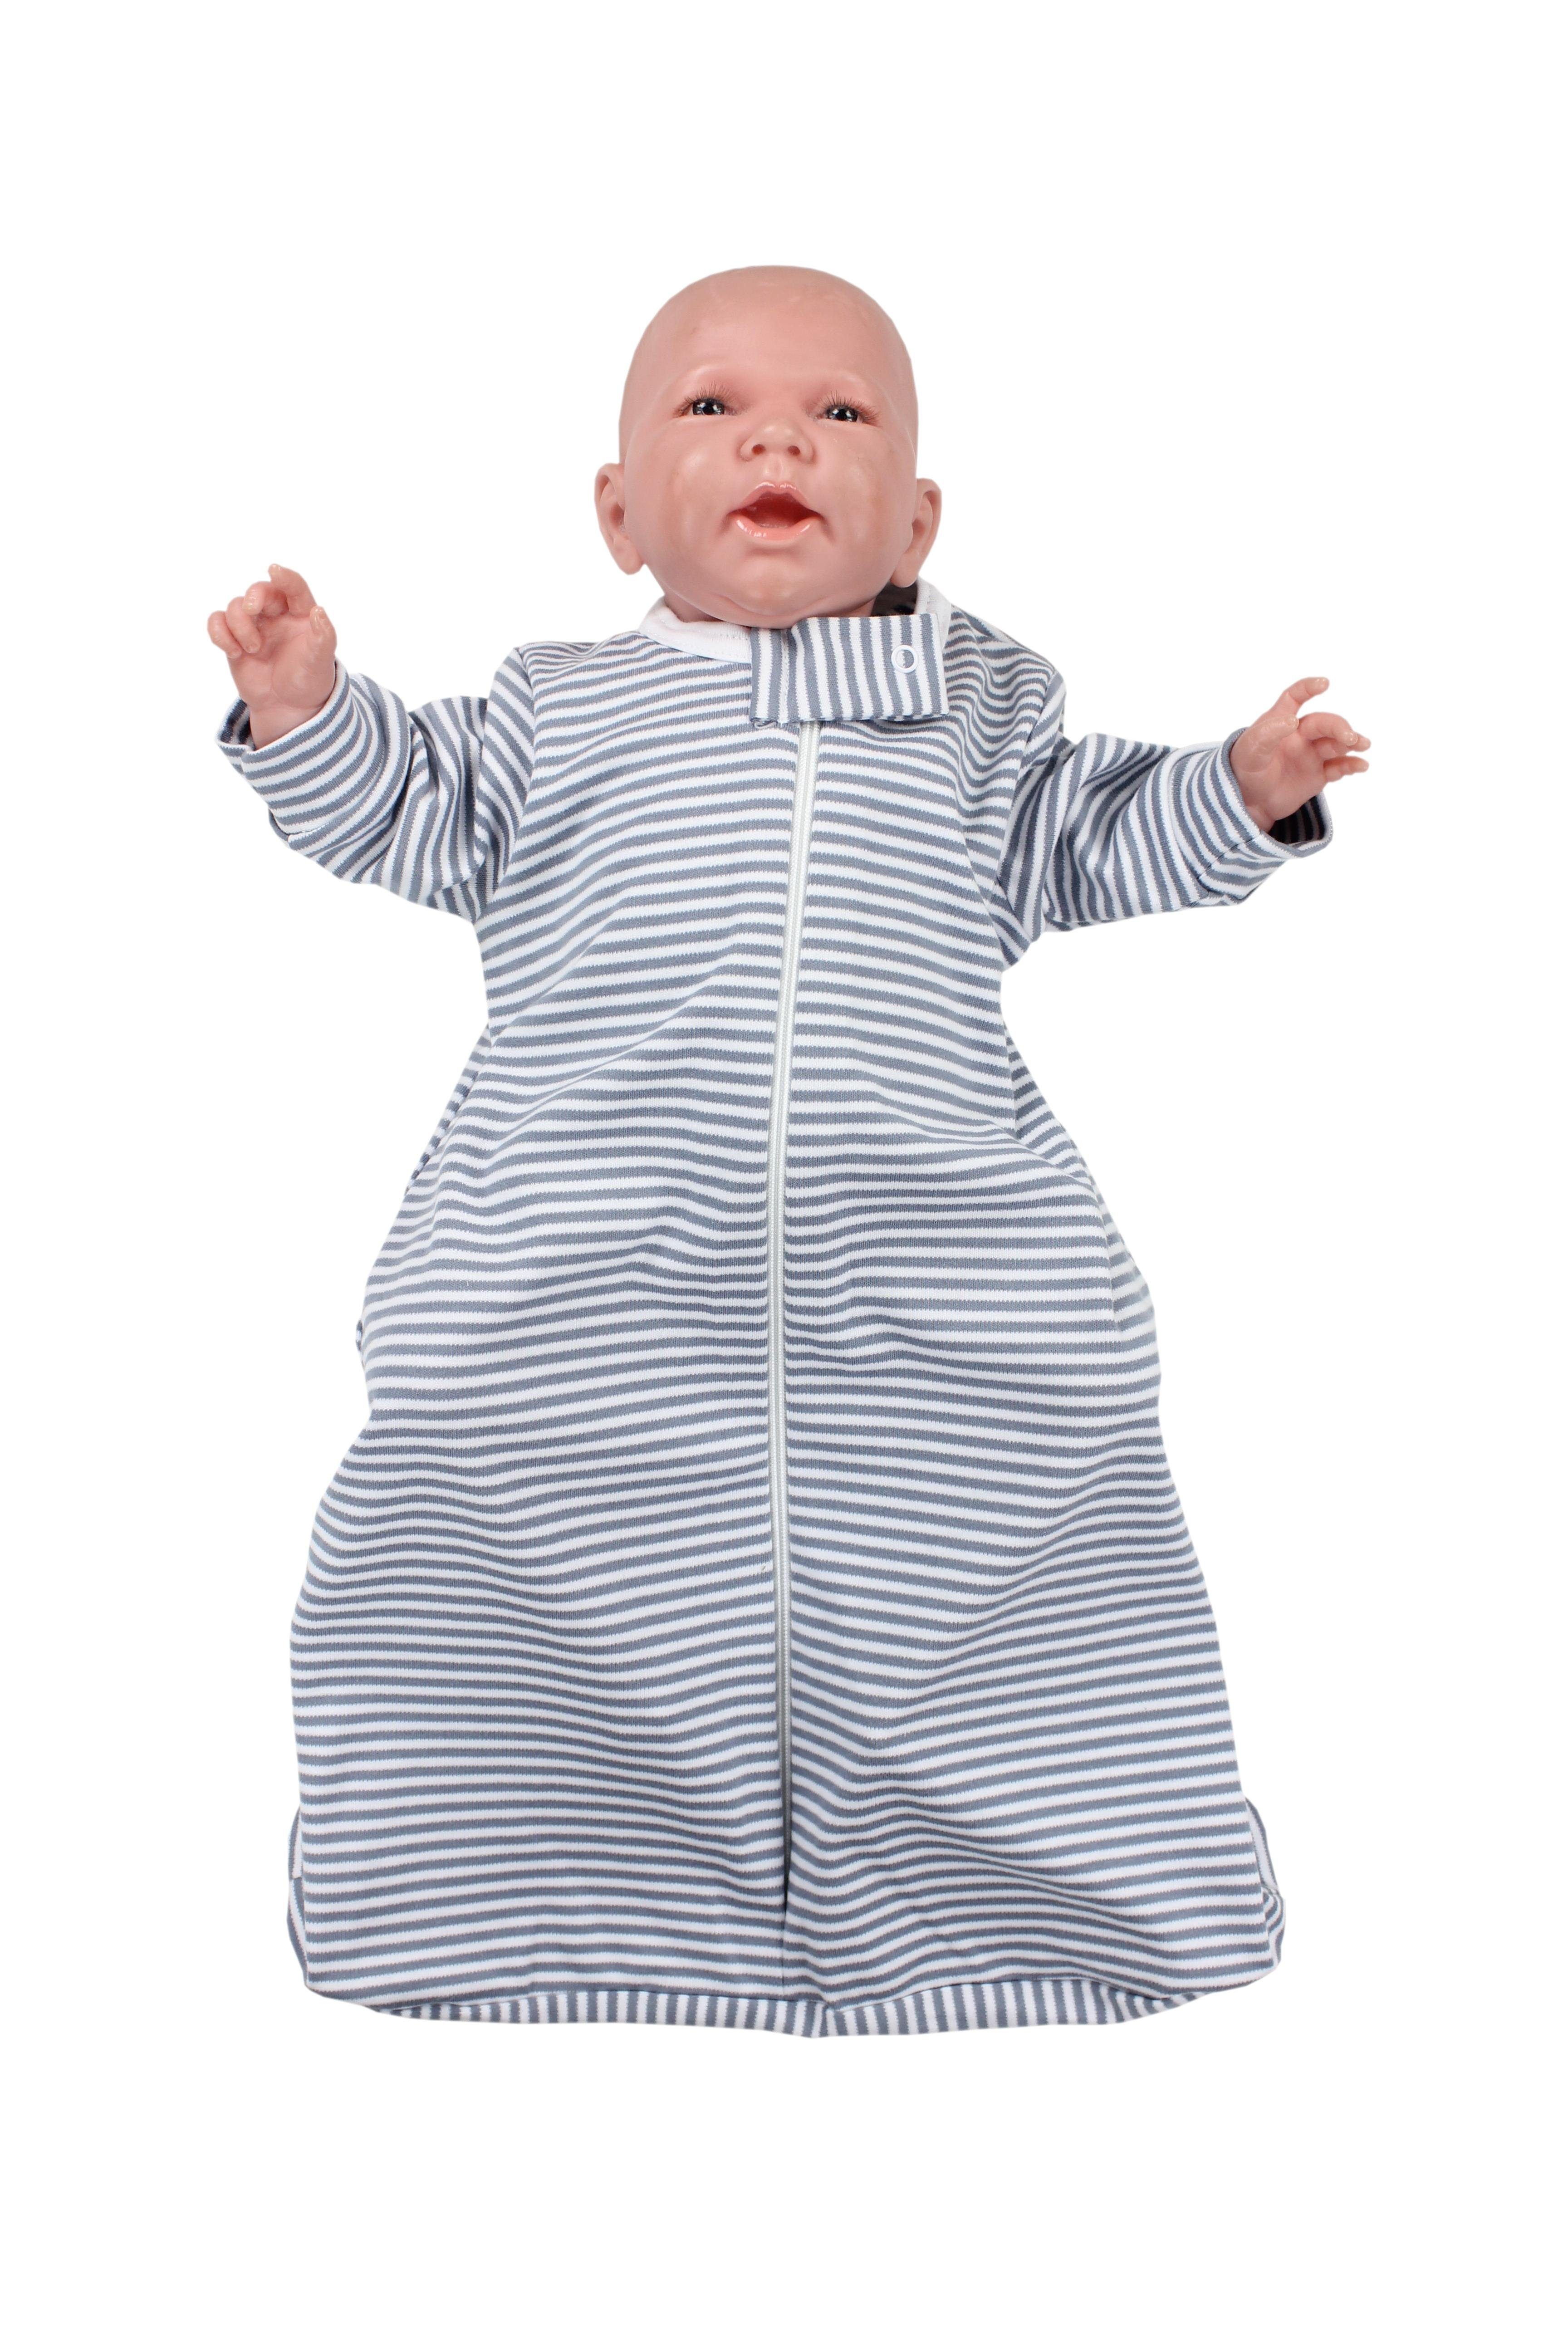 TupTam Baby Armen mit Babyschlafsack Streifenmuster Grau Schlafsack Unisex 0.2 zertifiziert TOG OEKO-TEX